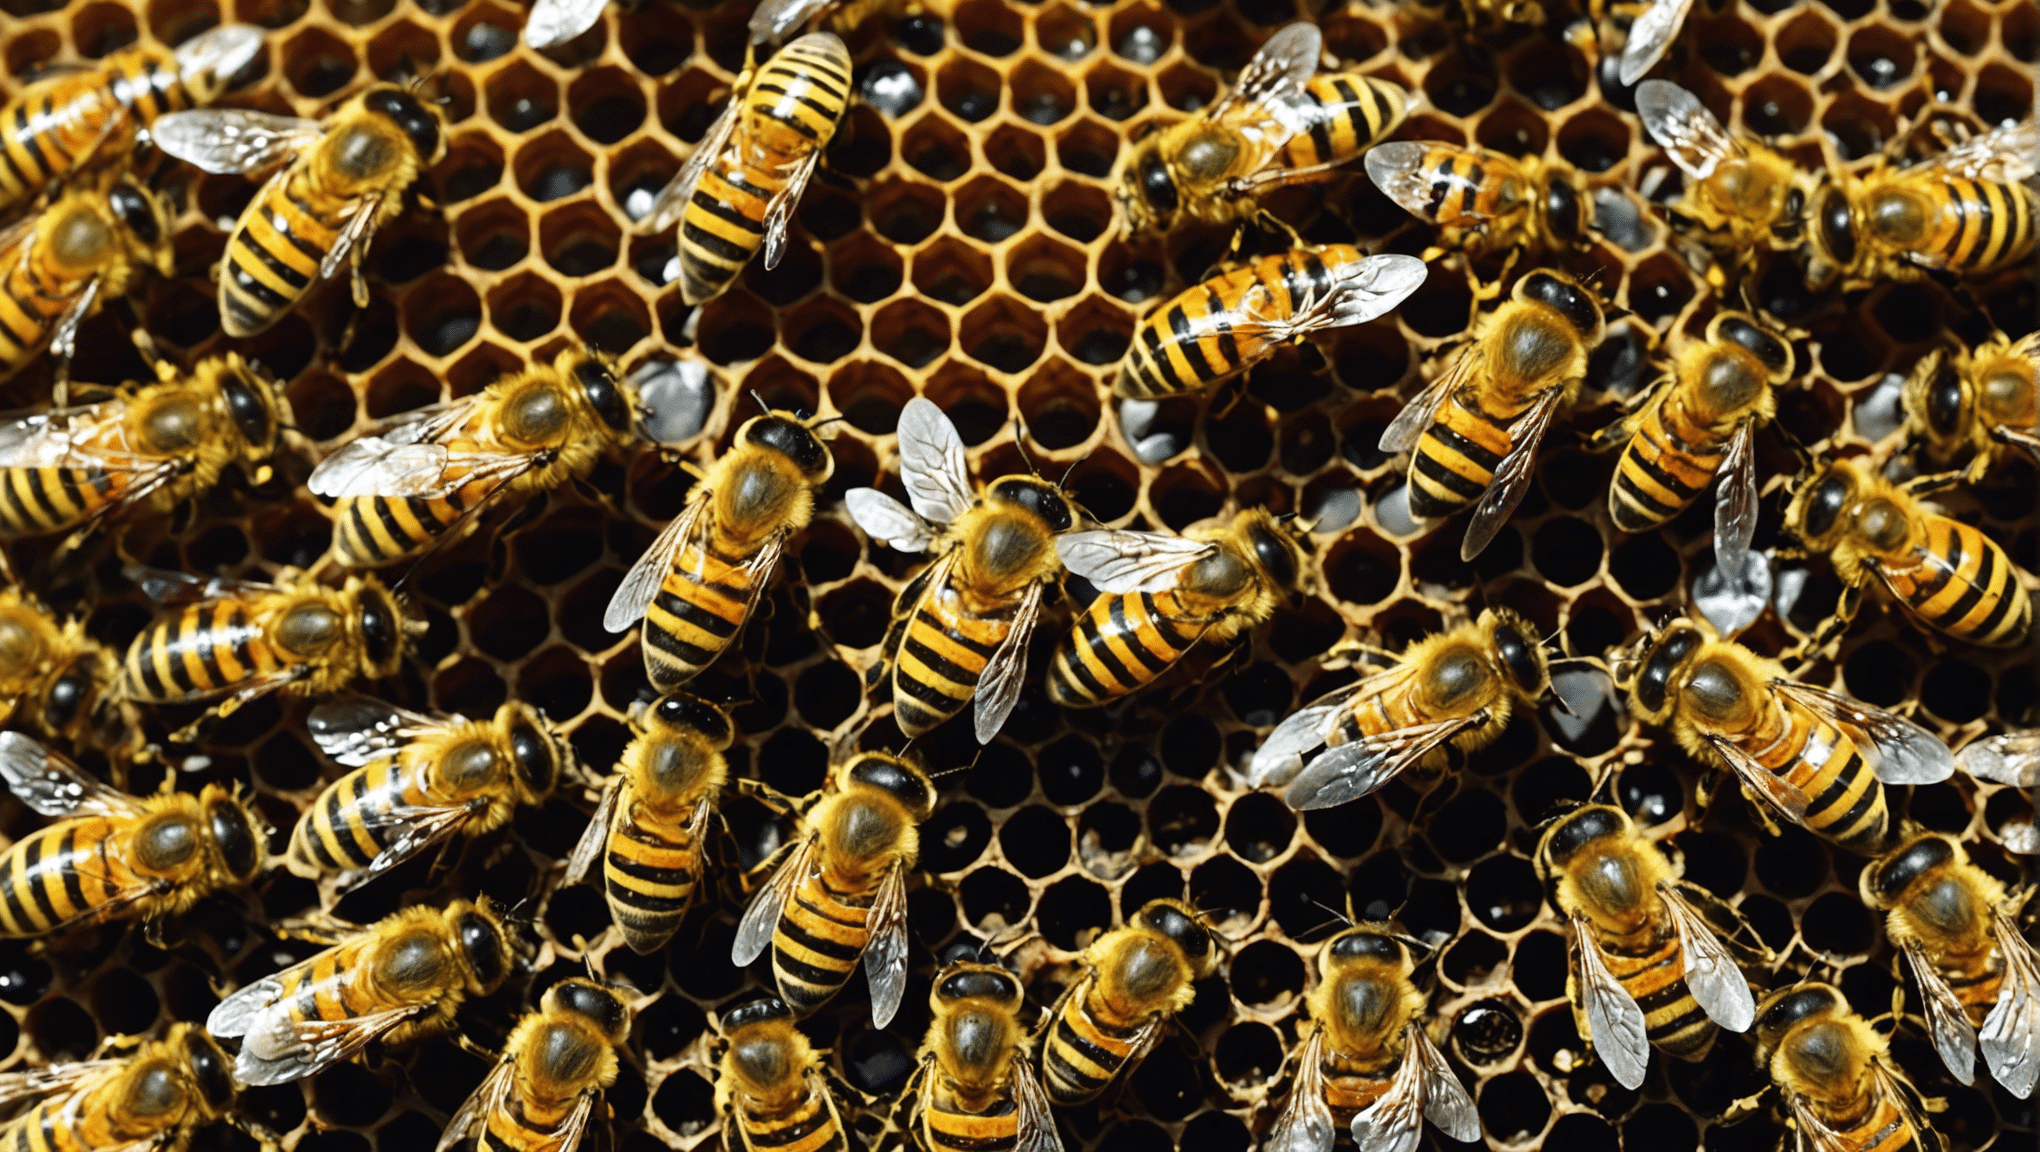 découvrez les trésors naturels des abeilles et leur importance pour l'environnement dans cette exploration fascinante de la biodiversité.